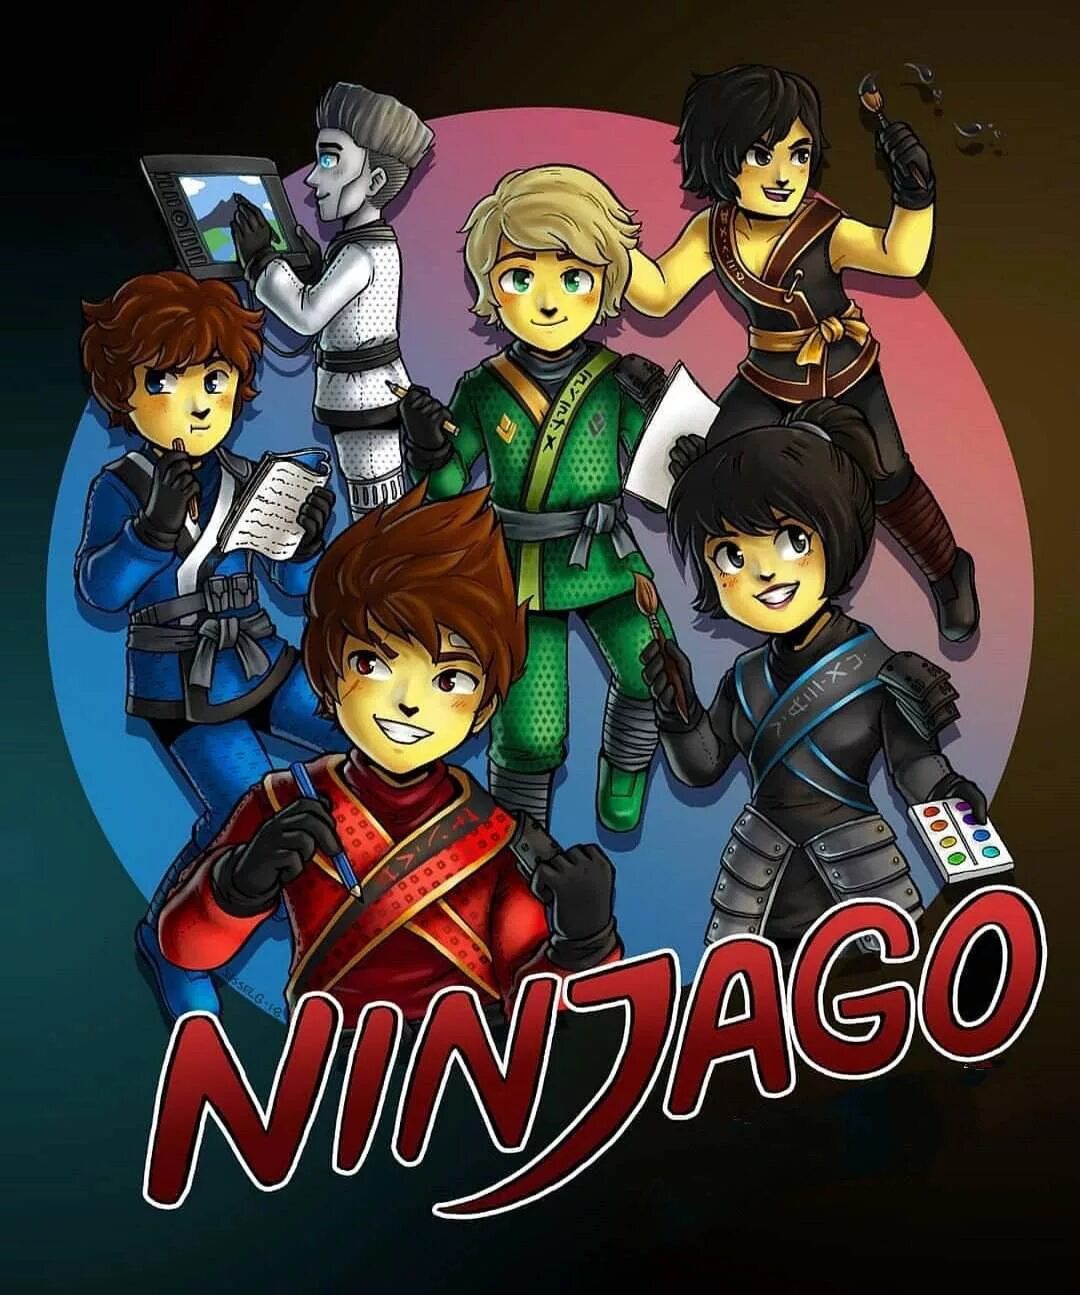 Ninjago art. Кай Джей Зейн Коул Ллойд ния. Лего Ниндзяго персонажи арт. Ниндзяго арты команда. Ниндзяго аниме Кай и Джей.